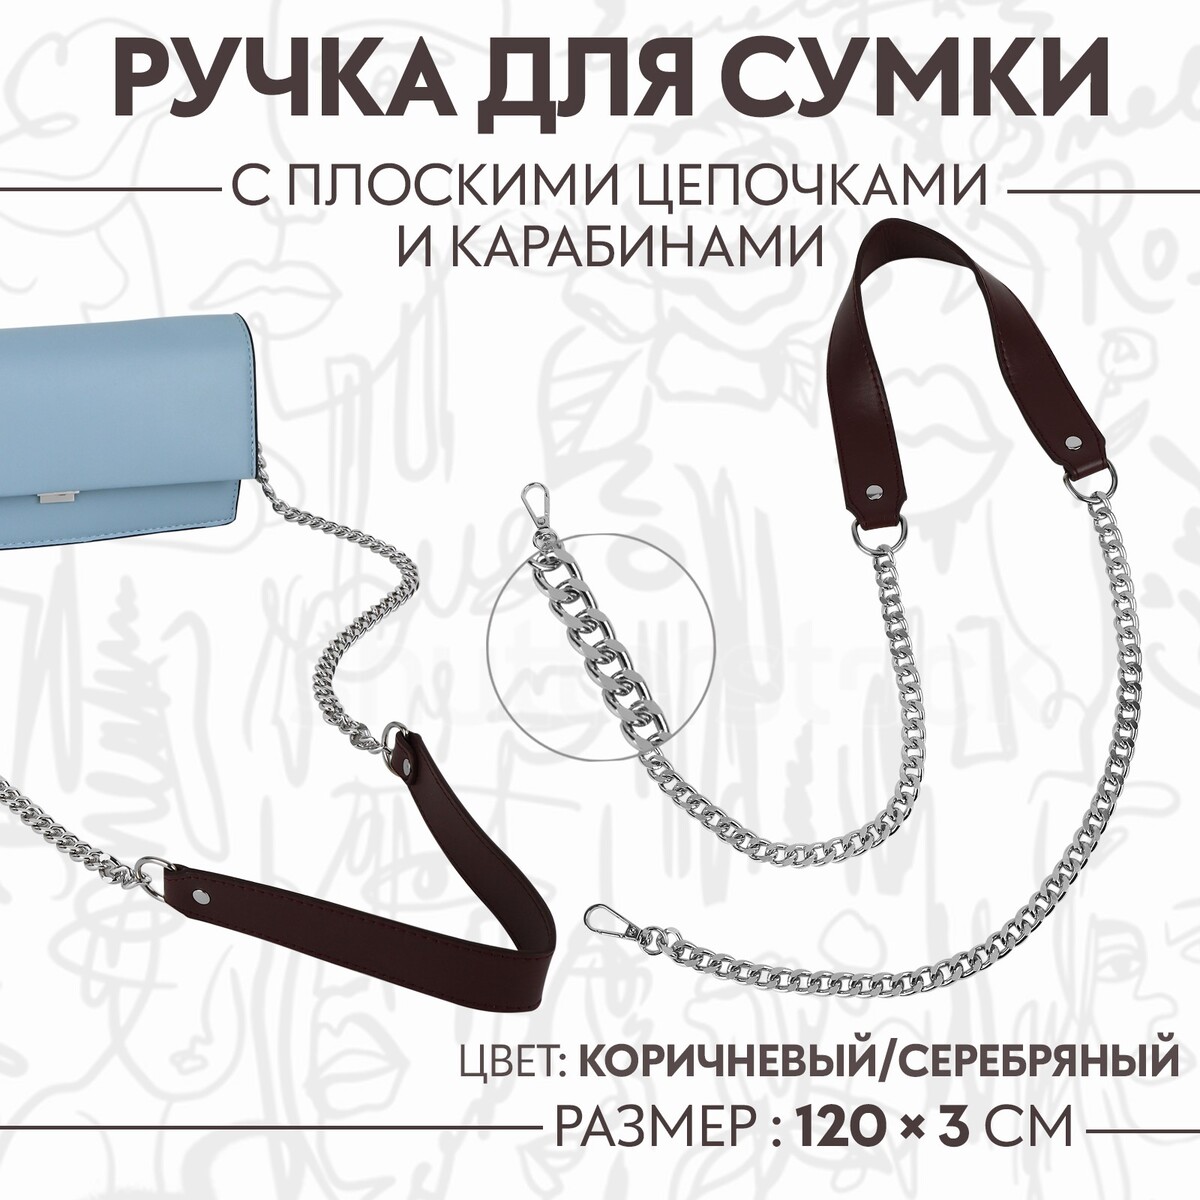 Ручка для сумки, с плоскими цепочками и карабинами, 120 × 3 см, цвет коричневый/серебряный ручка для сумки с цепочками и карабинами 120 × 1 8 см бордовый